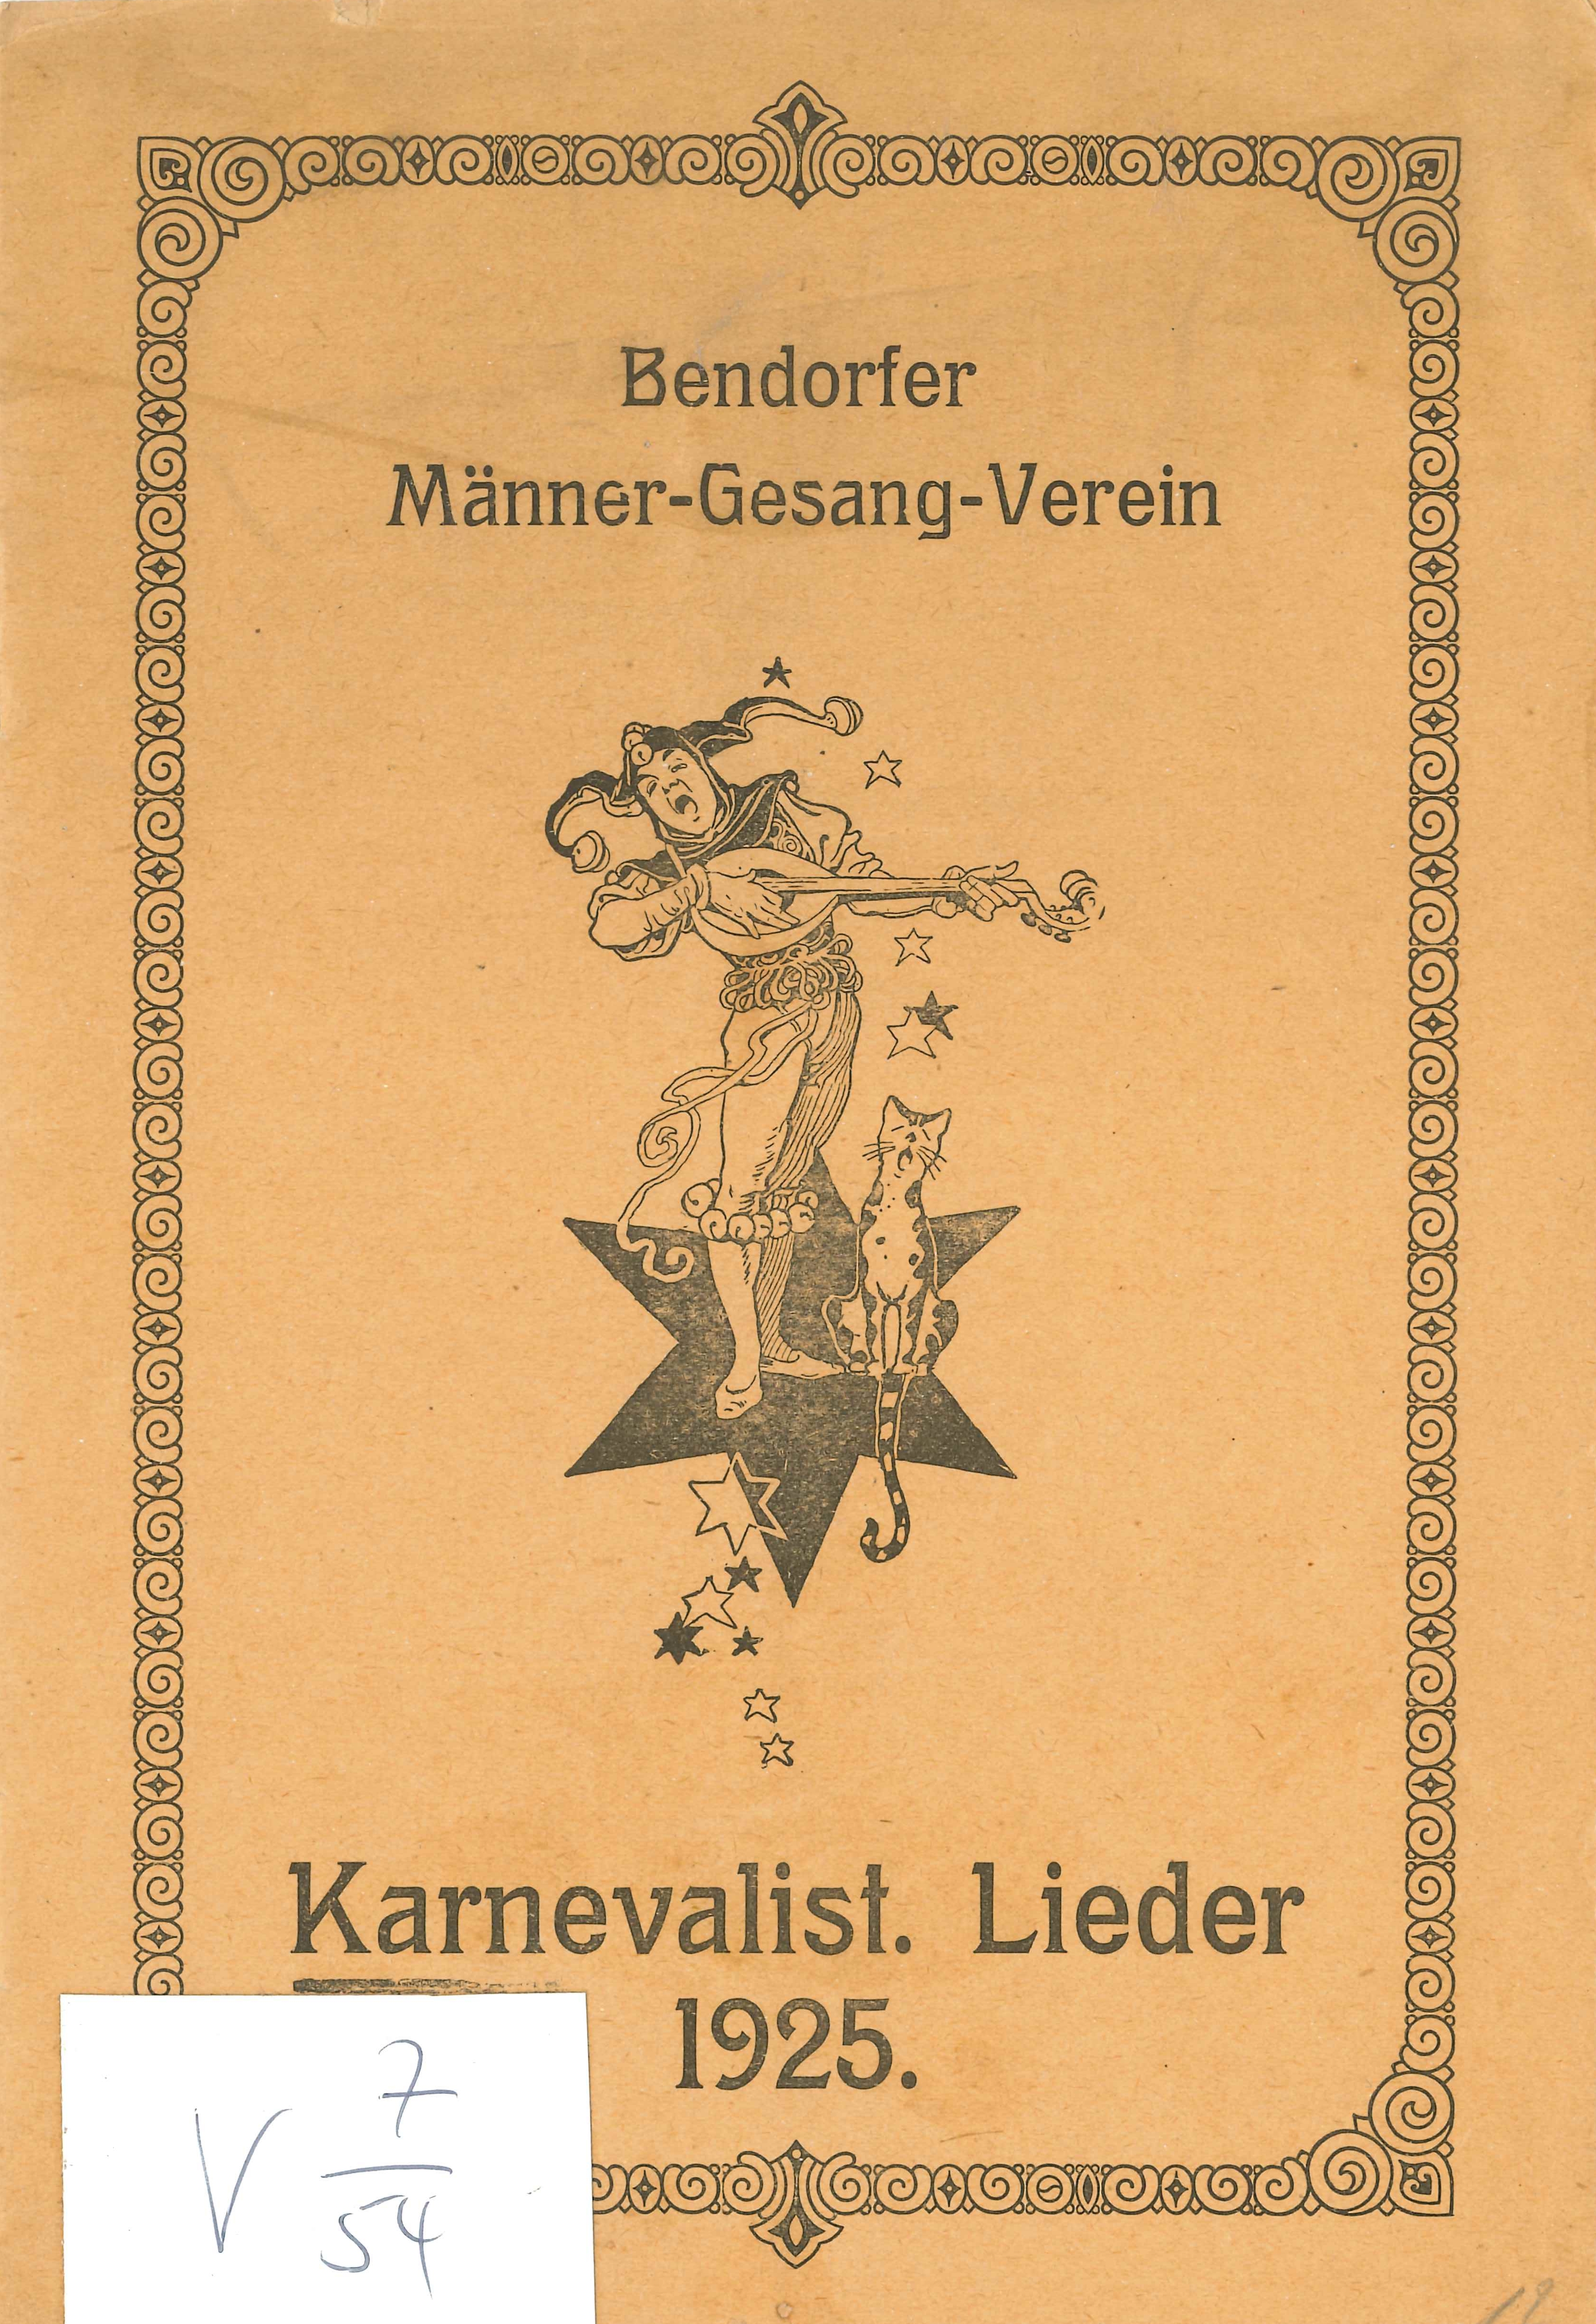 Karnevalistische Lieder 1925 (Rheinisches Eisenkunstguss-Museum CC BY-NC-SA)